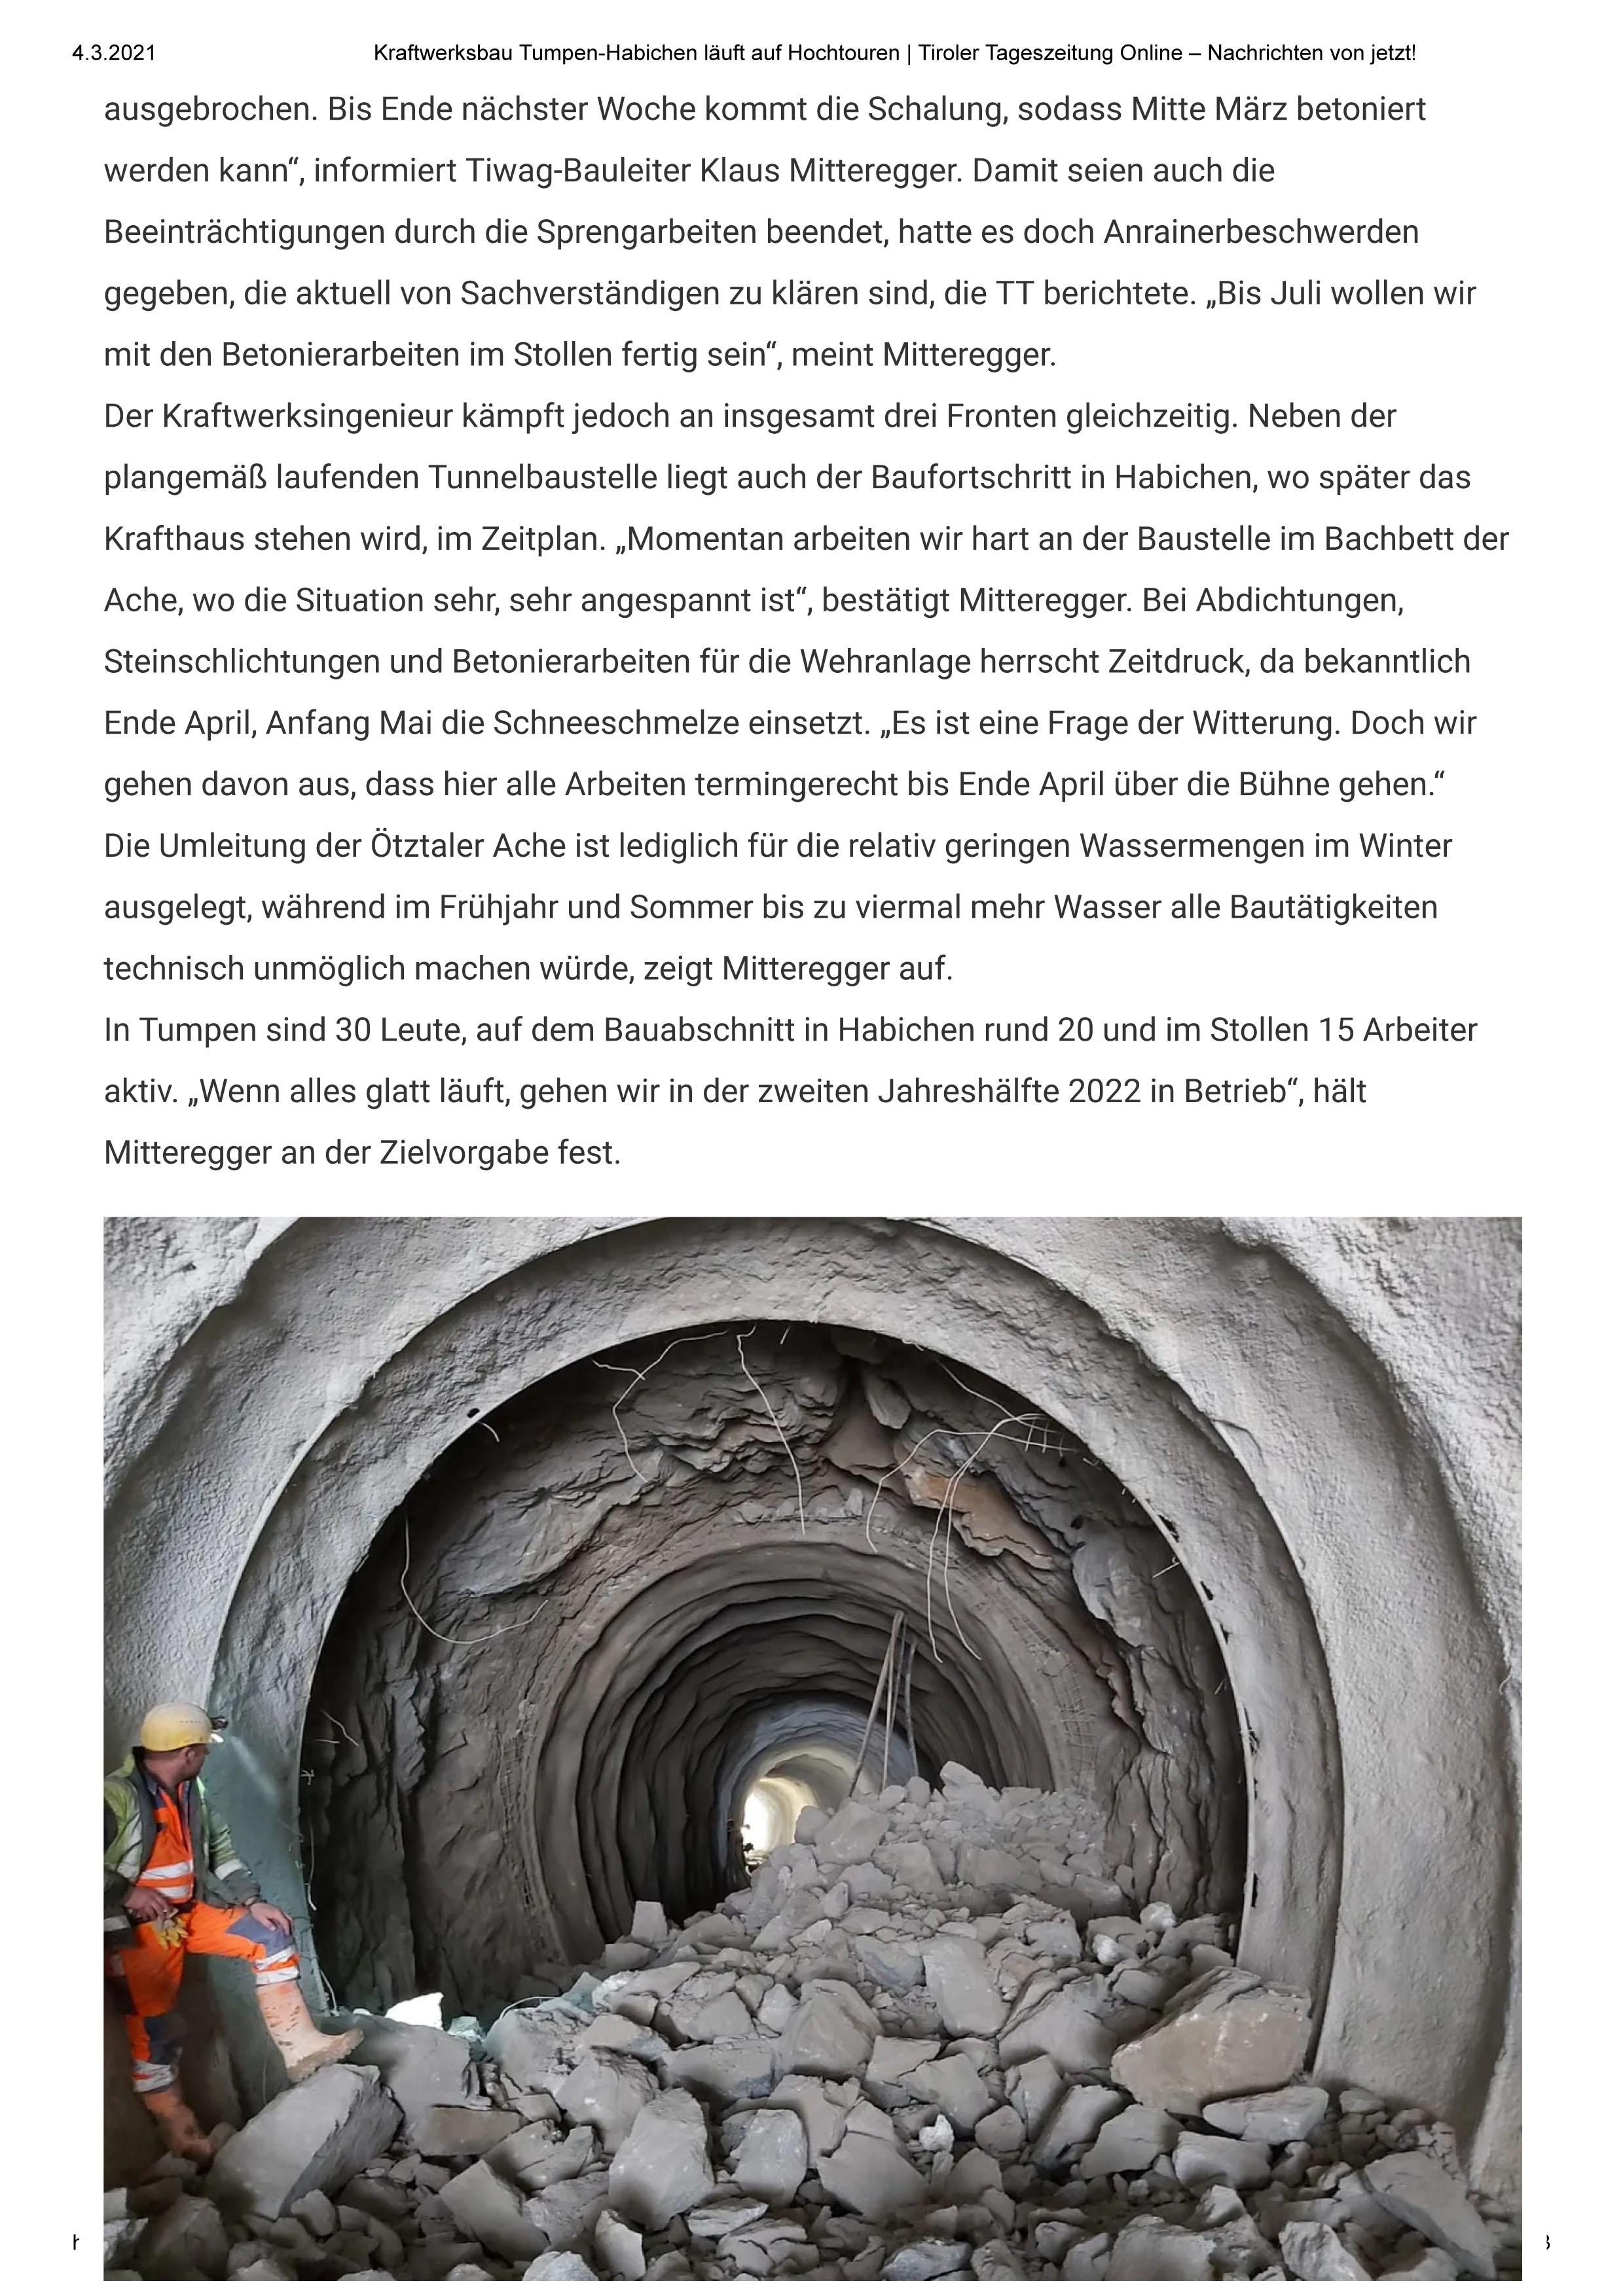 Kraftwerksbau Tumpen Habichen läuft auf Hochtouren Tiroler Tageszeitung Online Nachrichten von jetzt 2